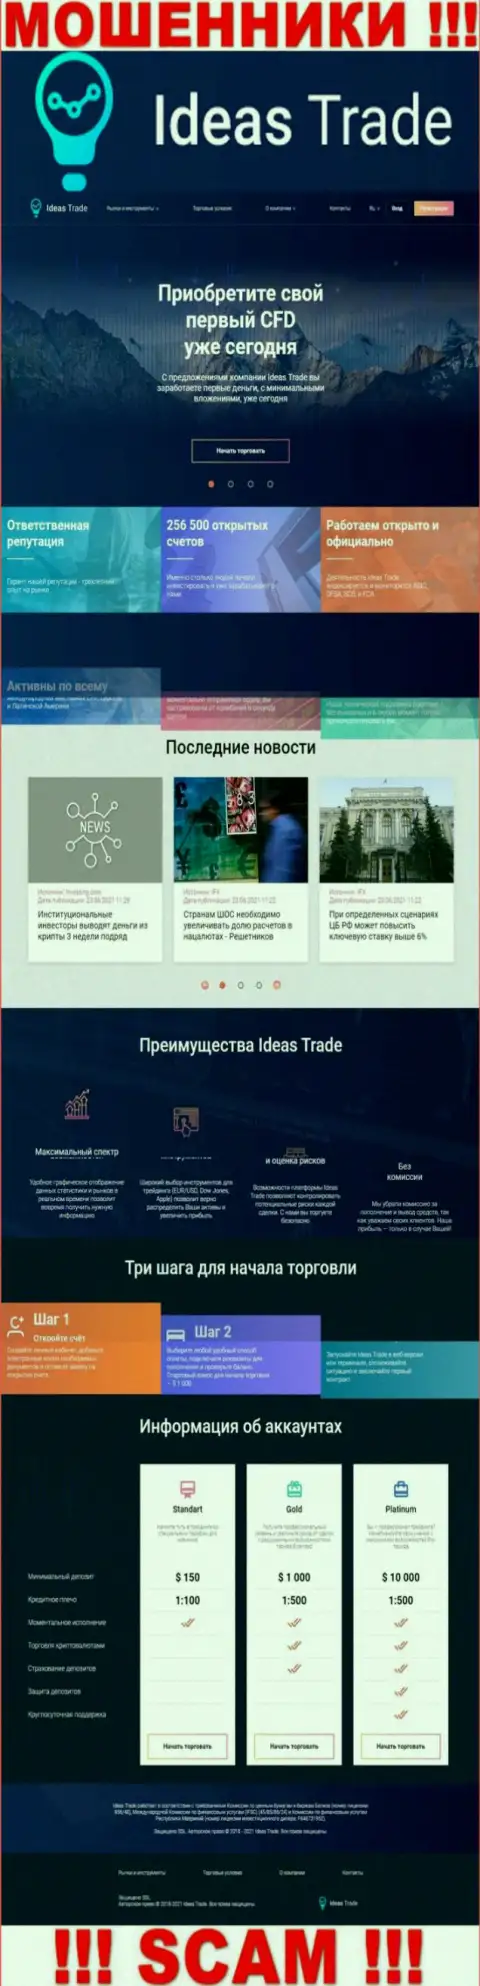 Официальный онлайн-ресурс воров Ideas Trade